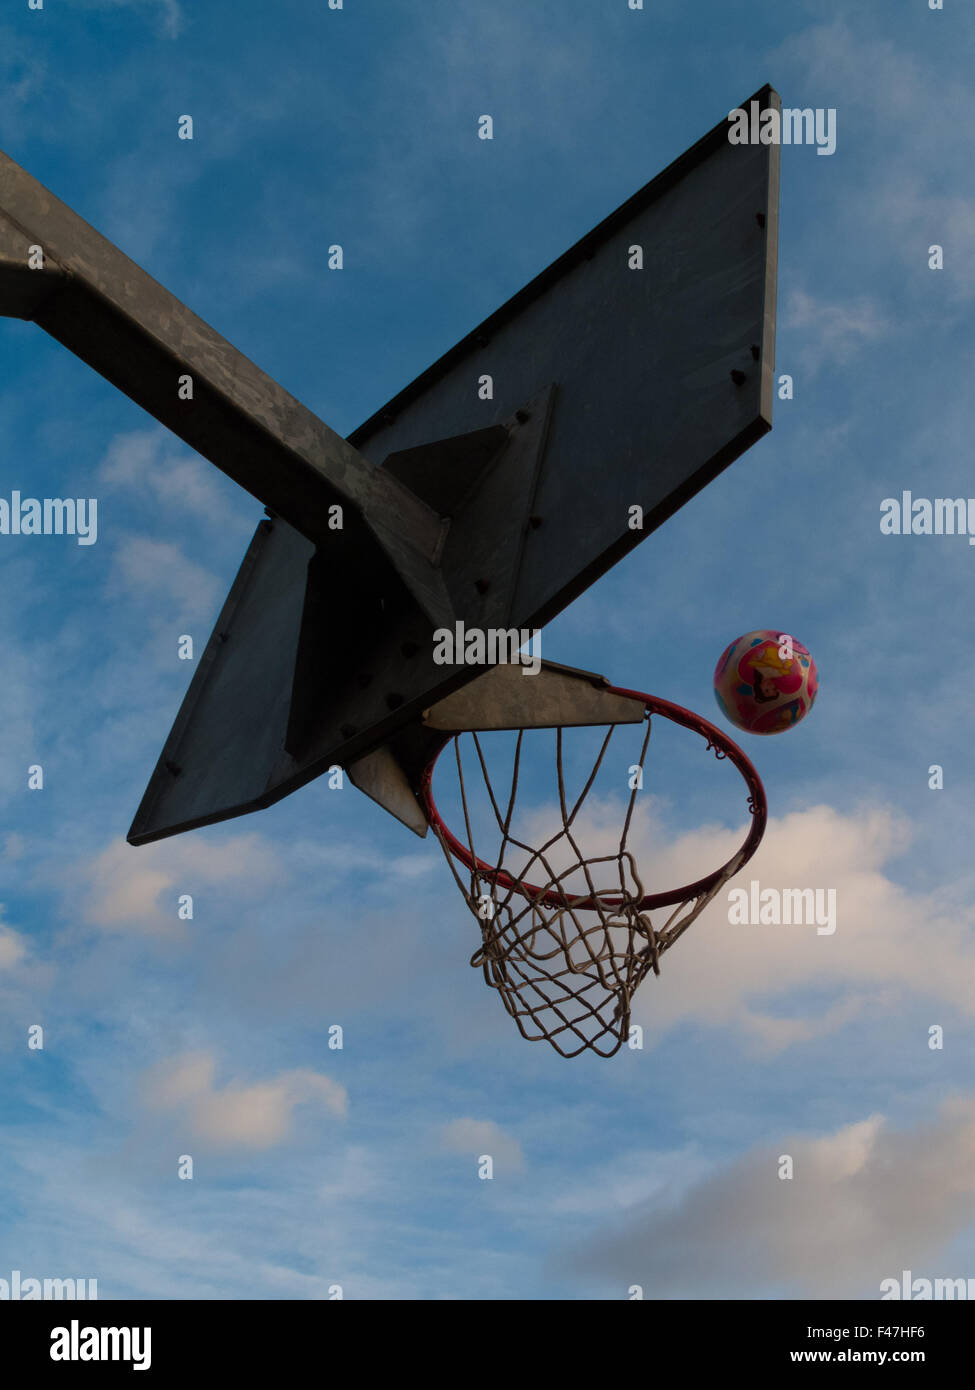 ball going into basketball / netball hoop Stock Photo